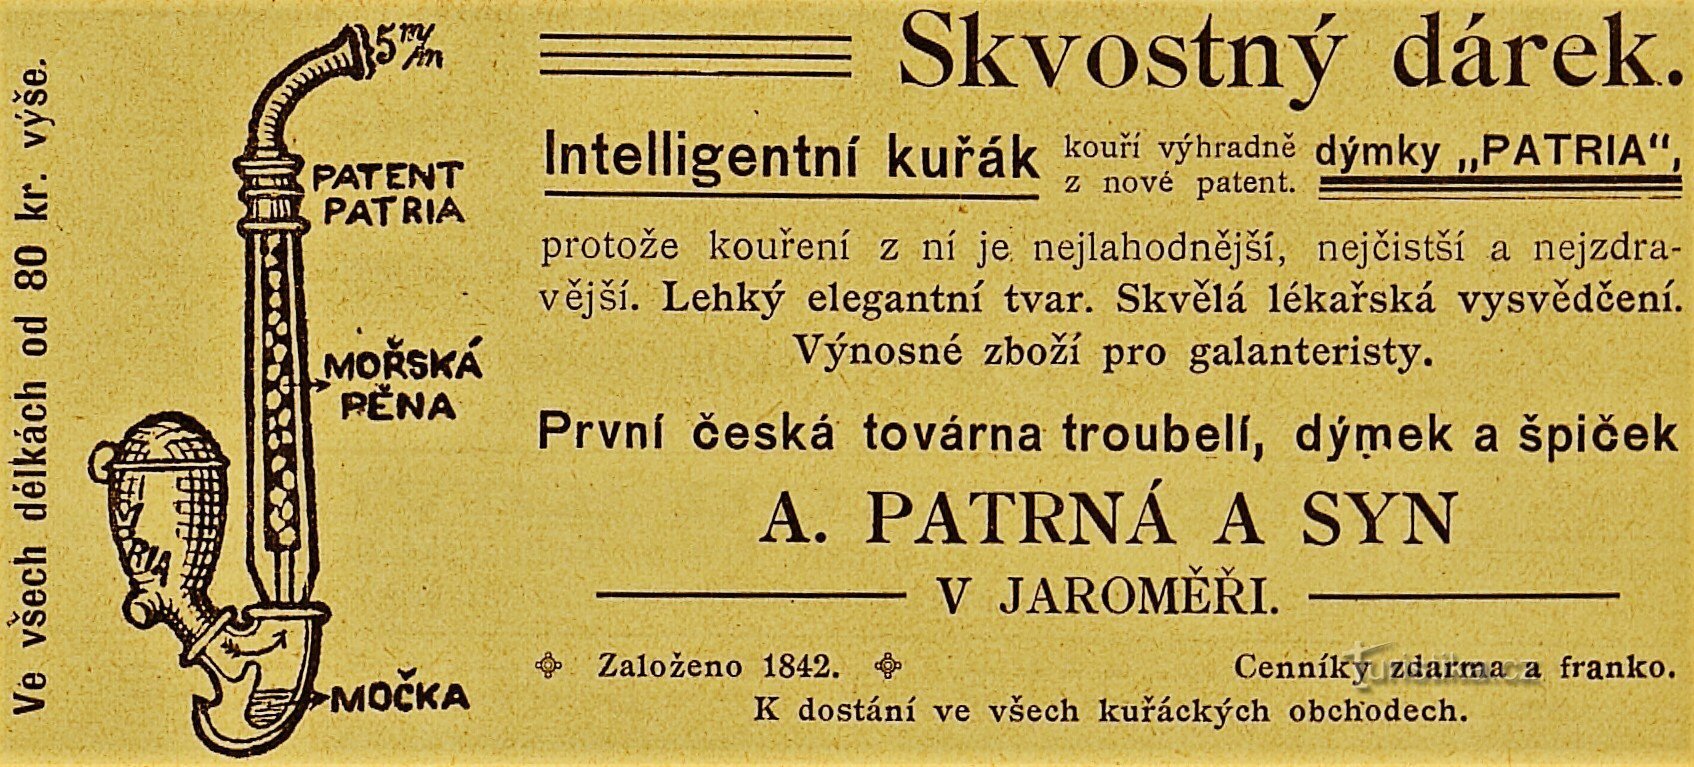 Quảng cáo đương đại của công ty A. Patrná và con trai ở Jaroměř (1901)